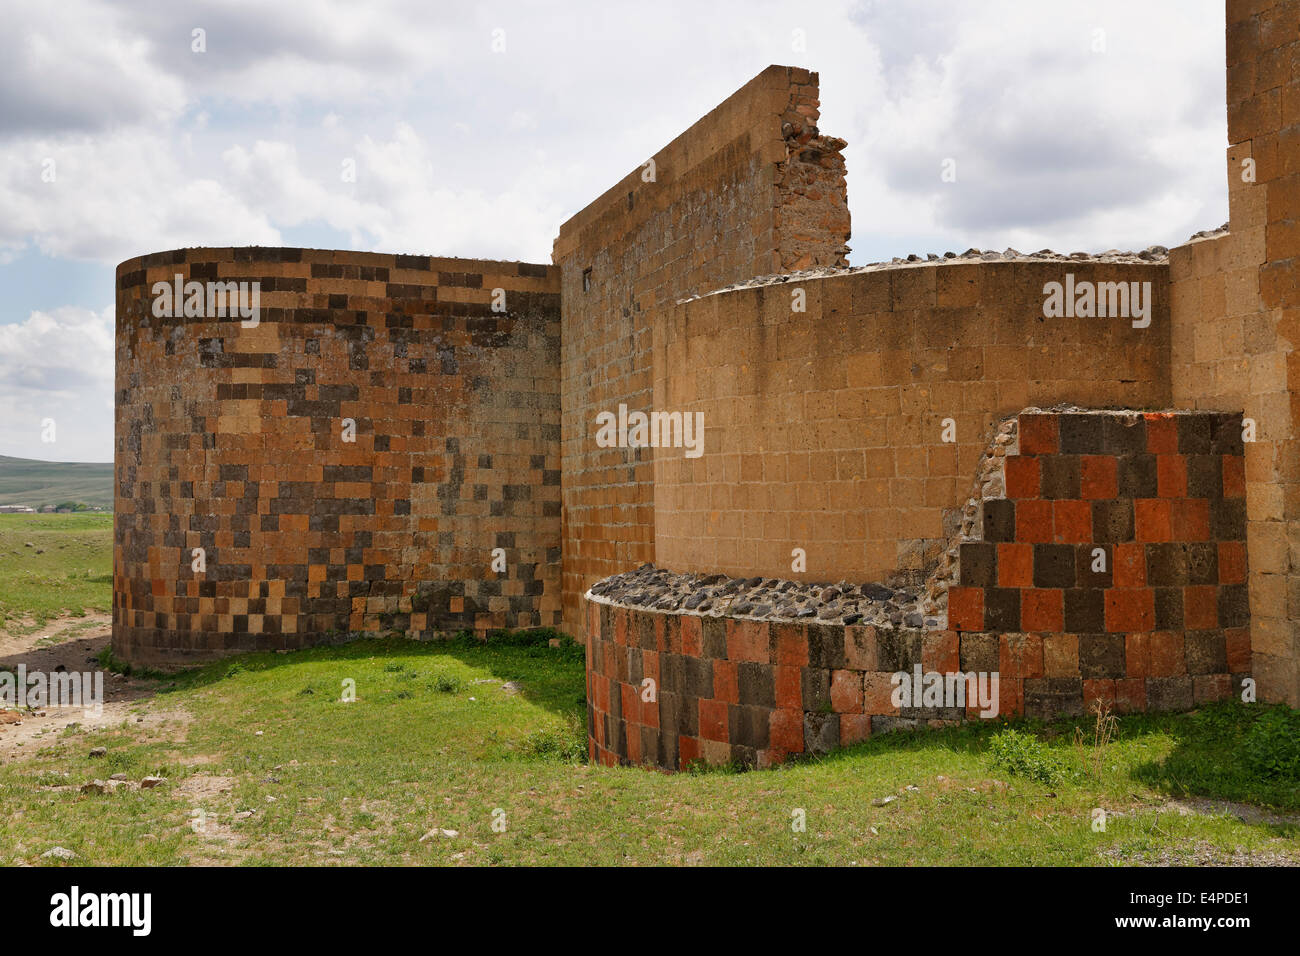 City wall, former Armenian capital Ani, Kars, Silk Route, Eastern Anatolia Region, Anatolia, Turkey Stock Photo